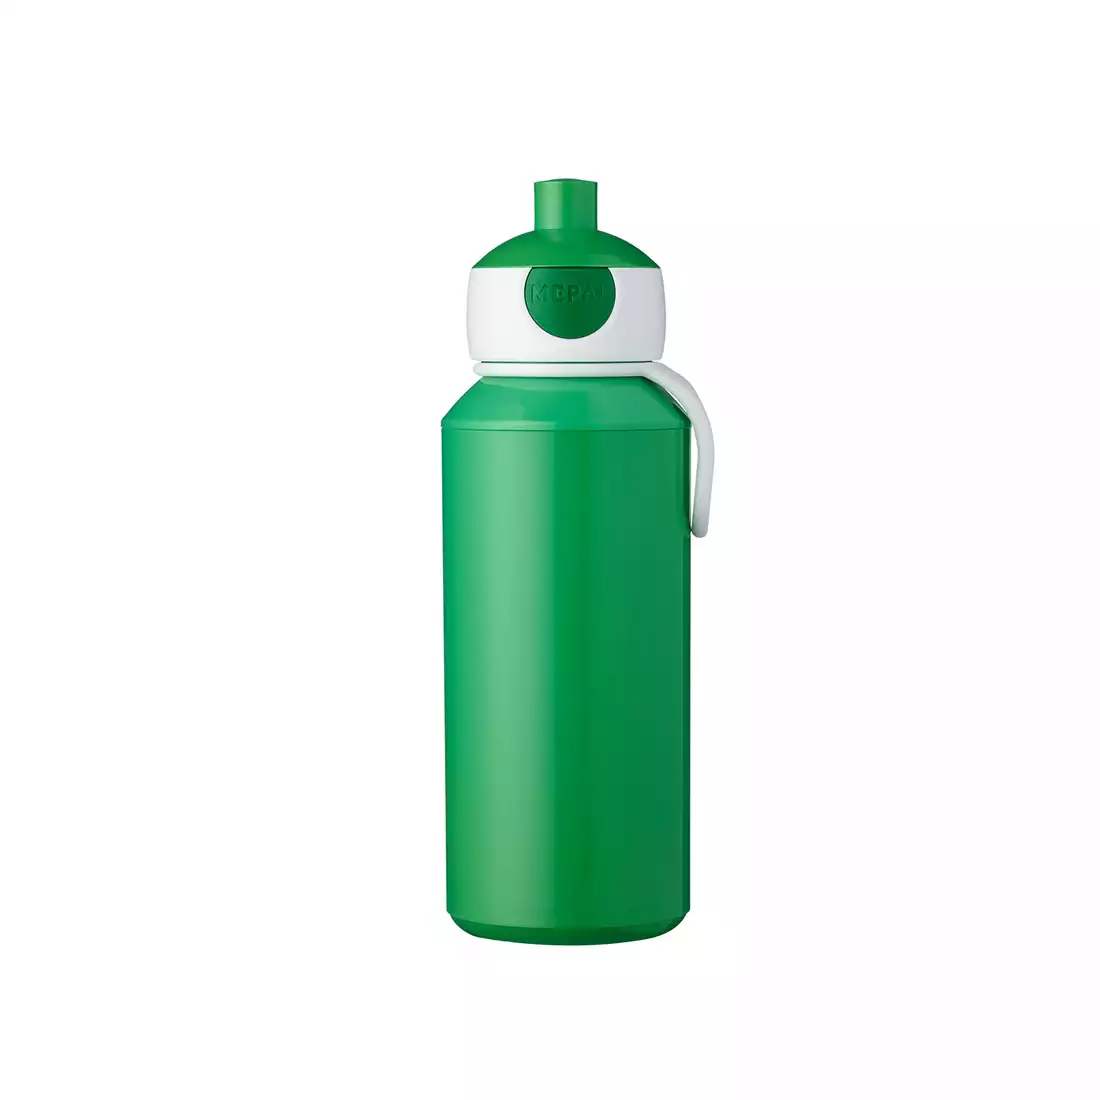 MEPAL POP-UP CAMPUS sticla de apa pentru copii 400 ml, verde